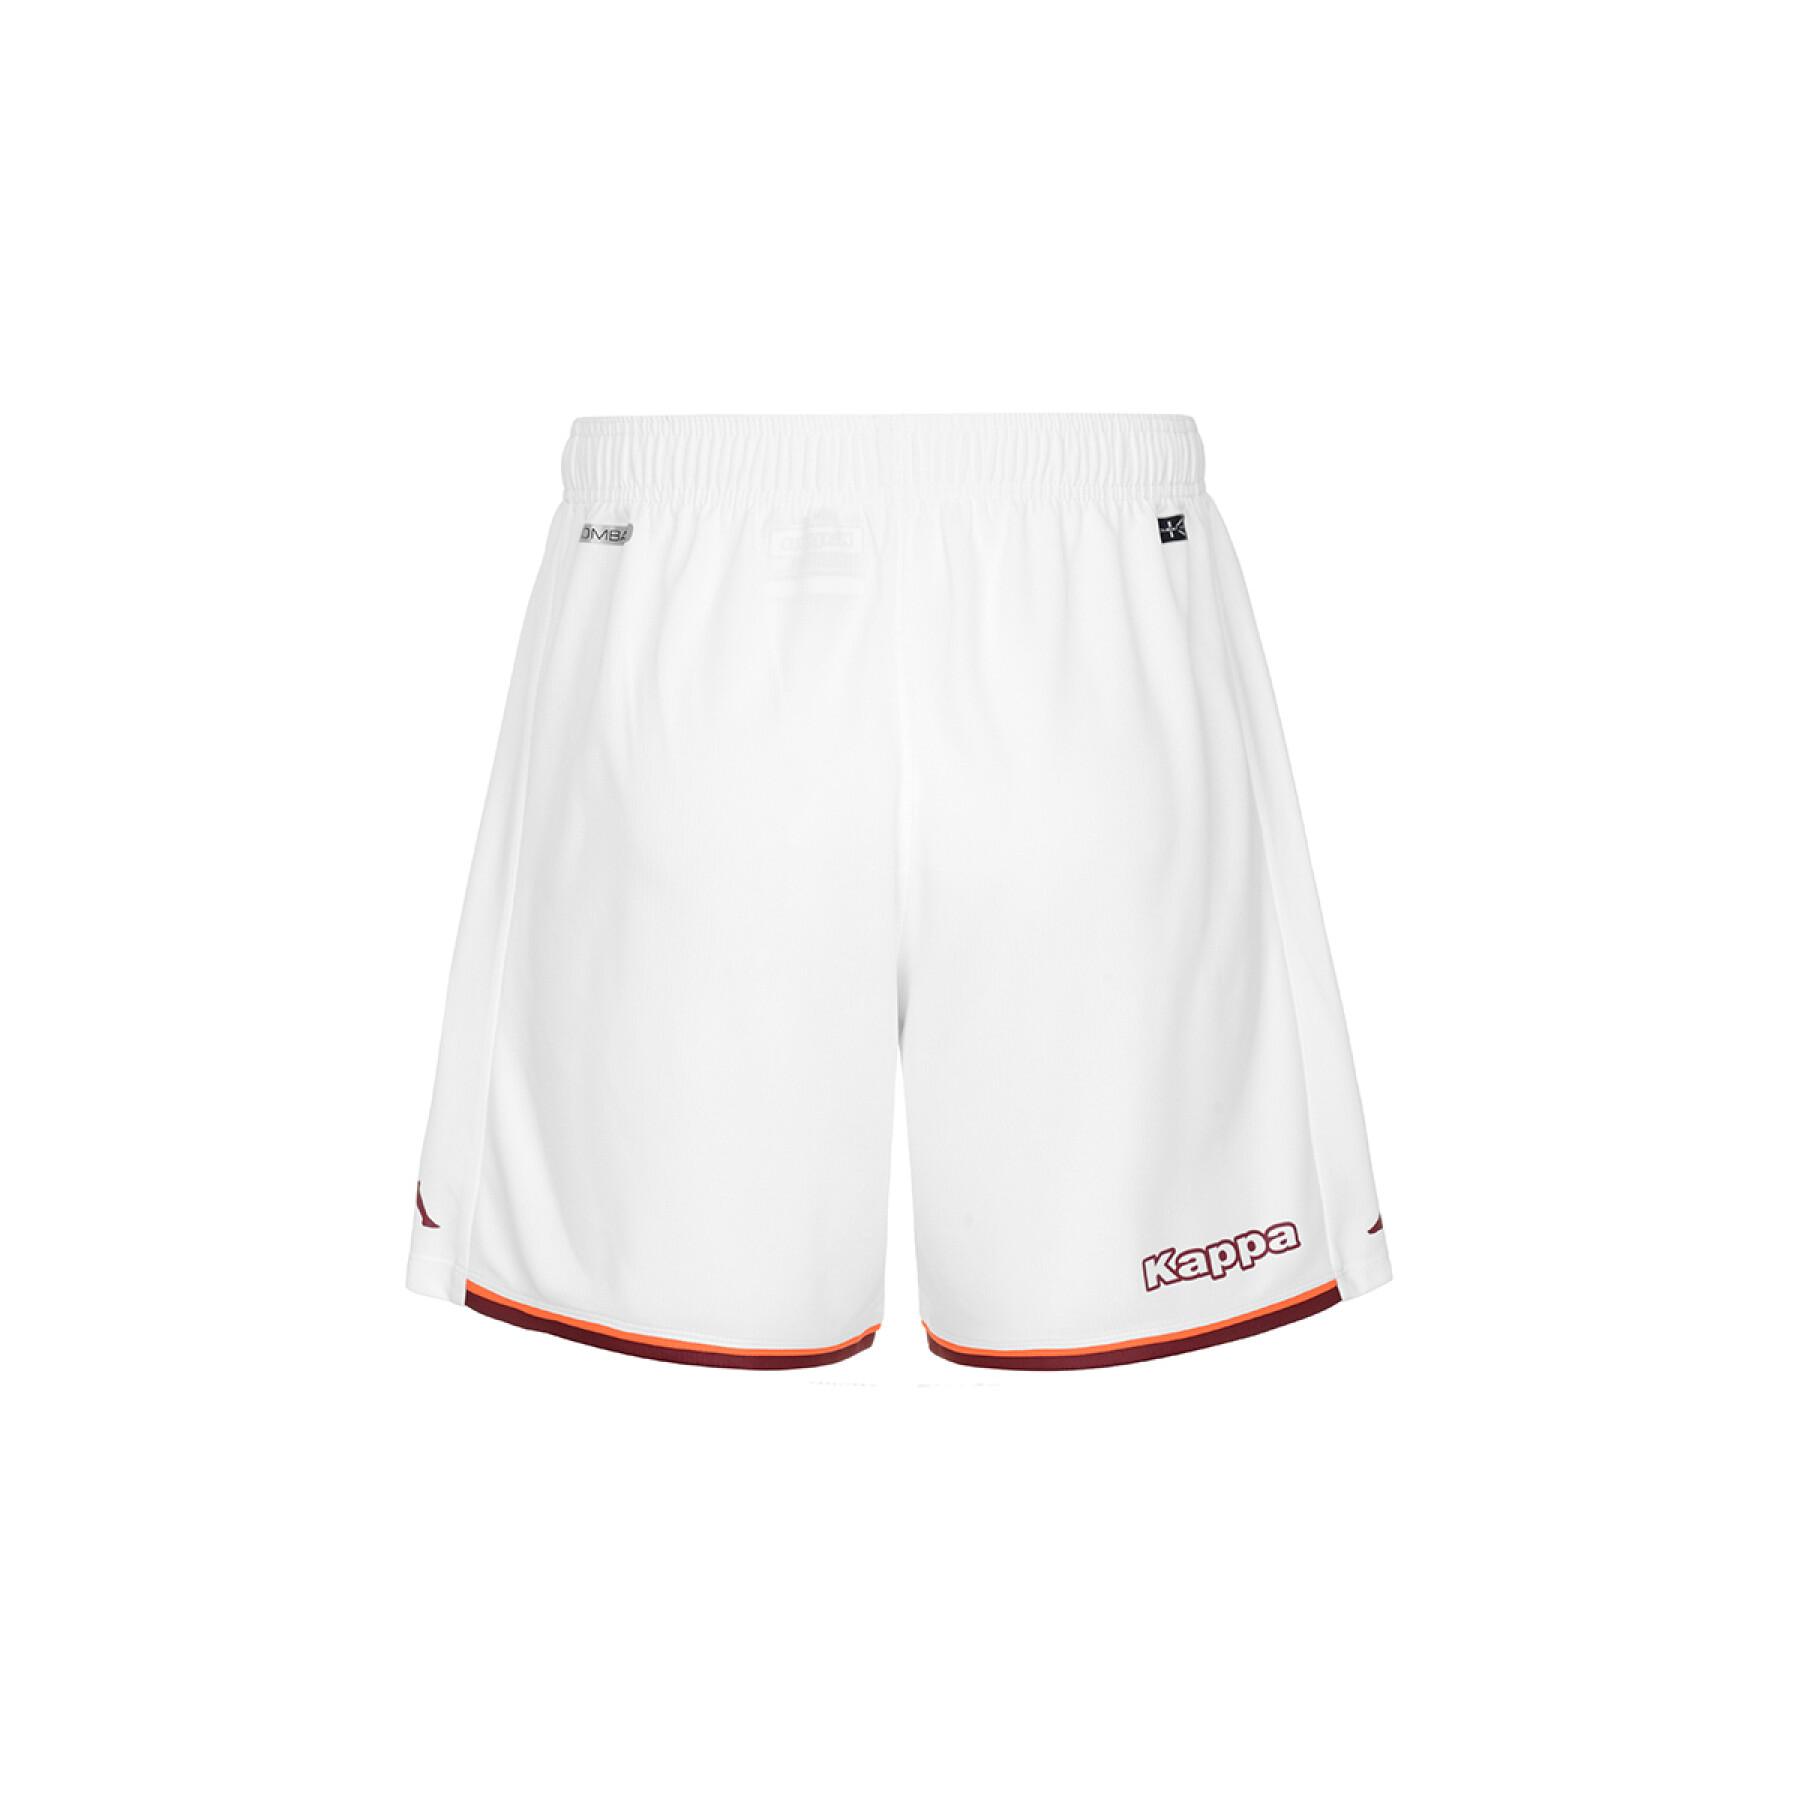 Outdoor shorts FC Metz 2021/22